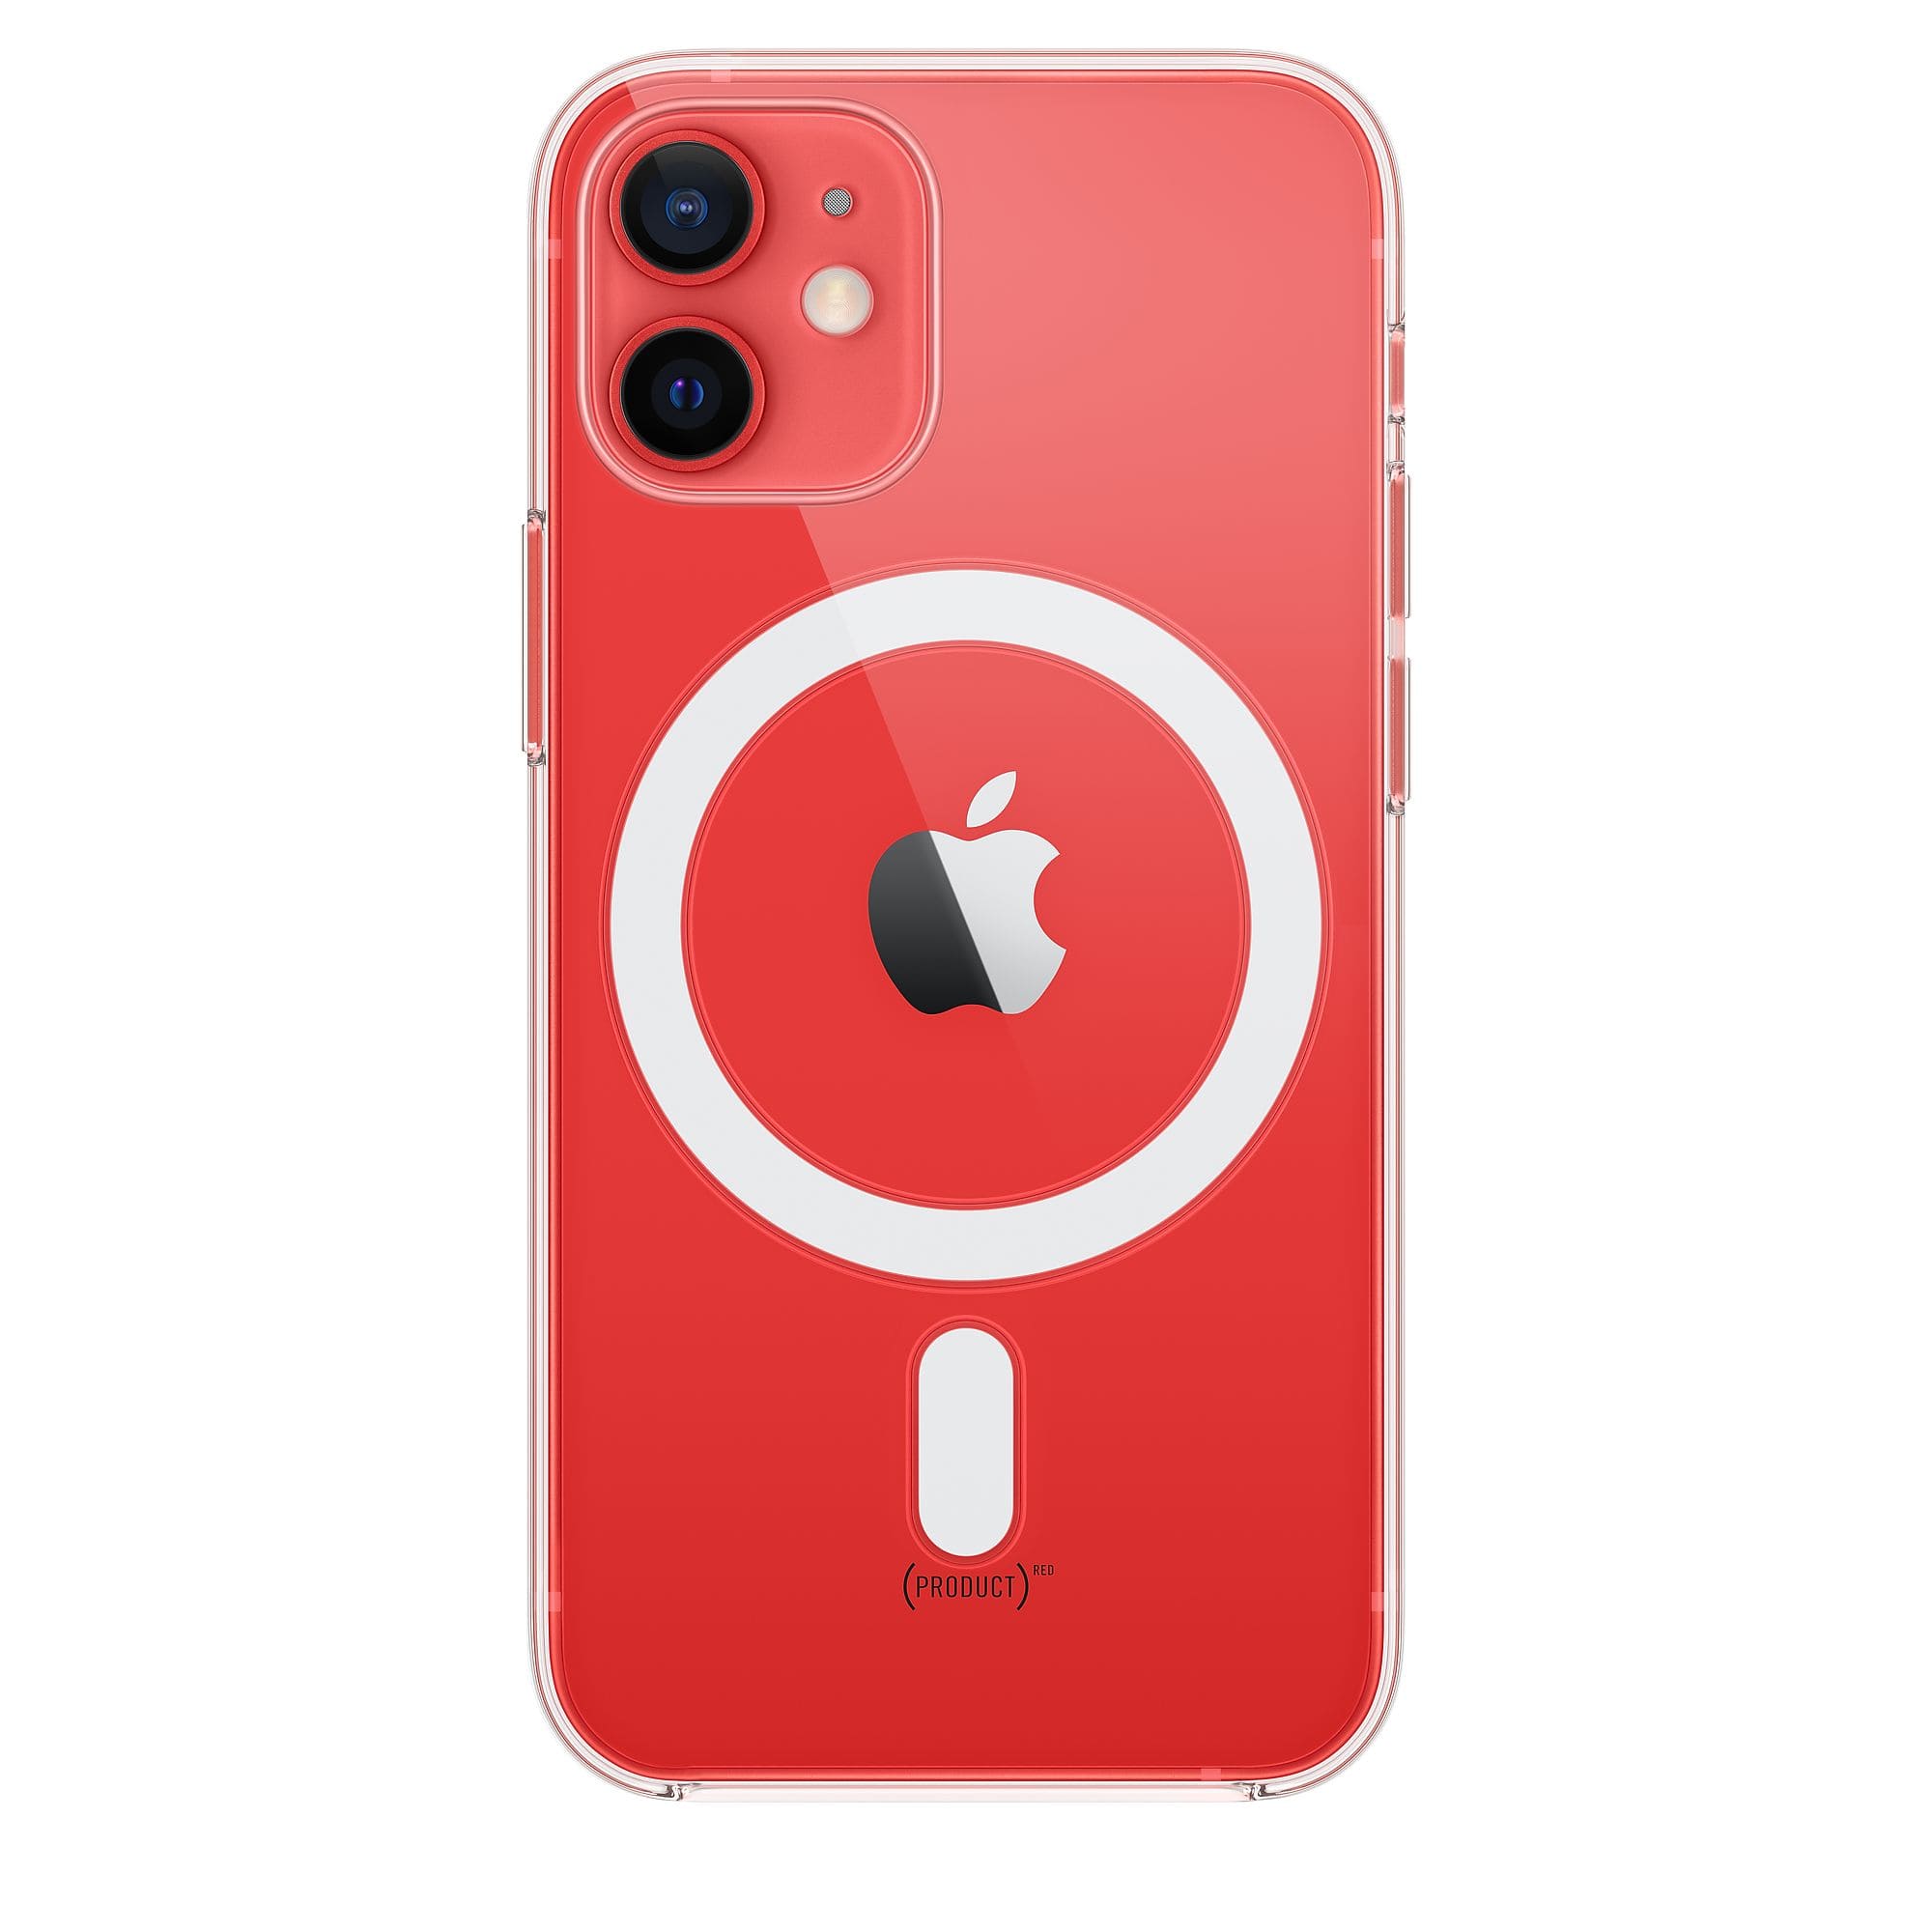 Фото — Чехол для смартфона Apple MagSafe для iPhone 12 mini, поликарбонат, прозрачный